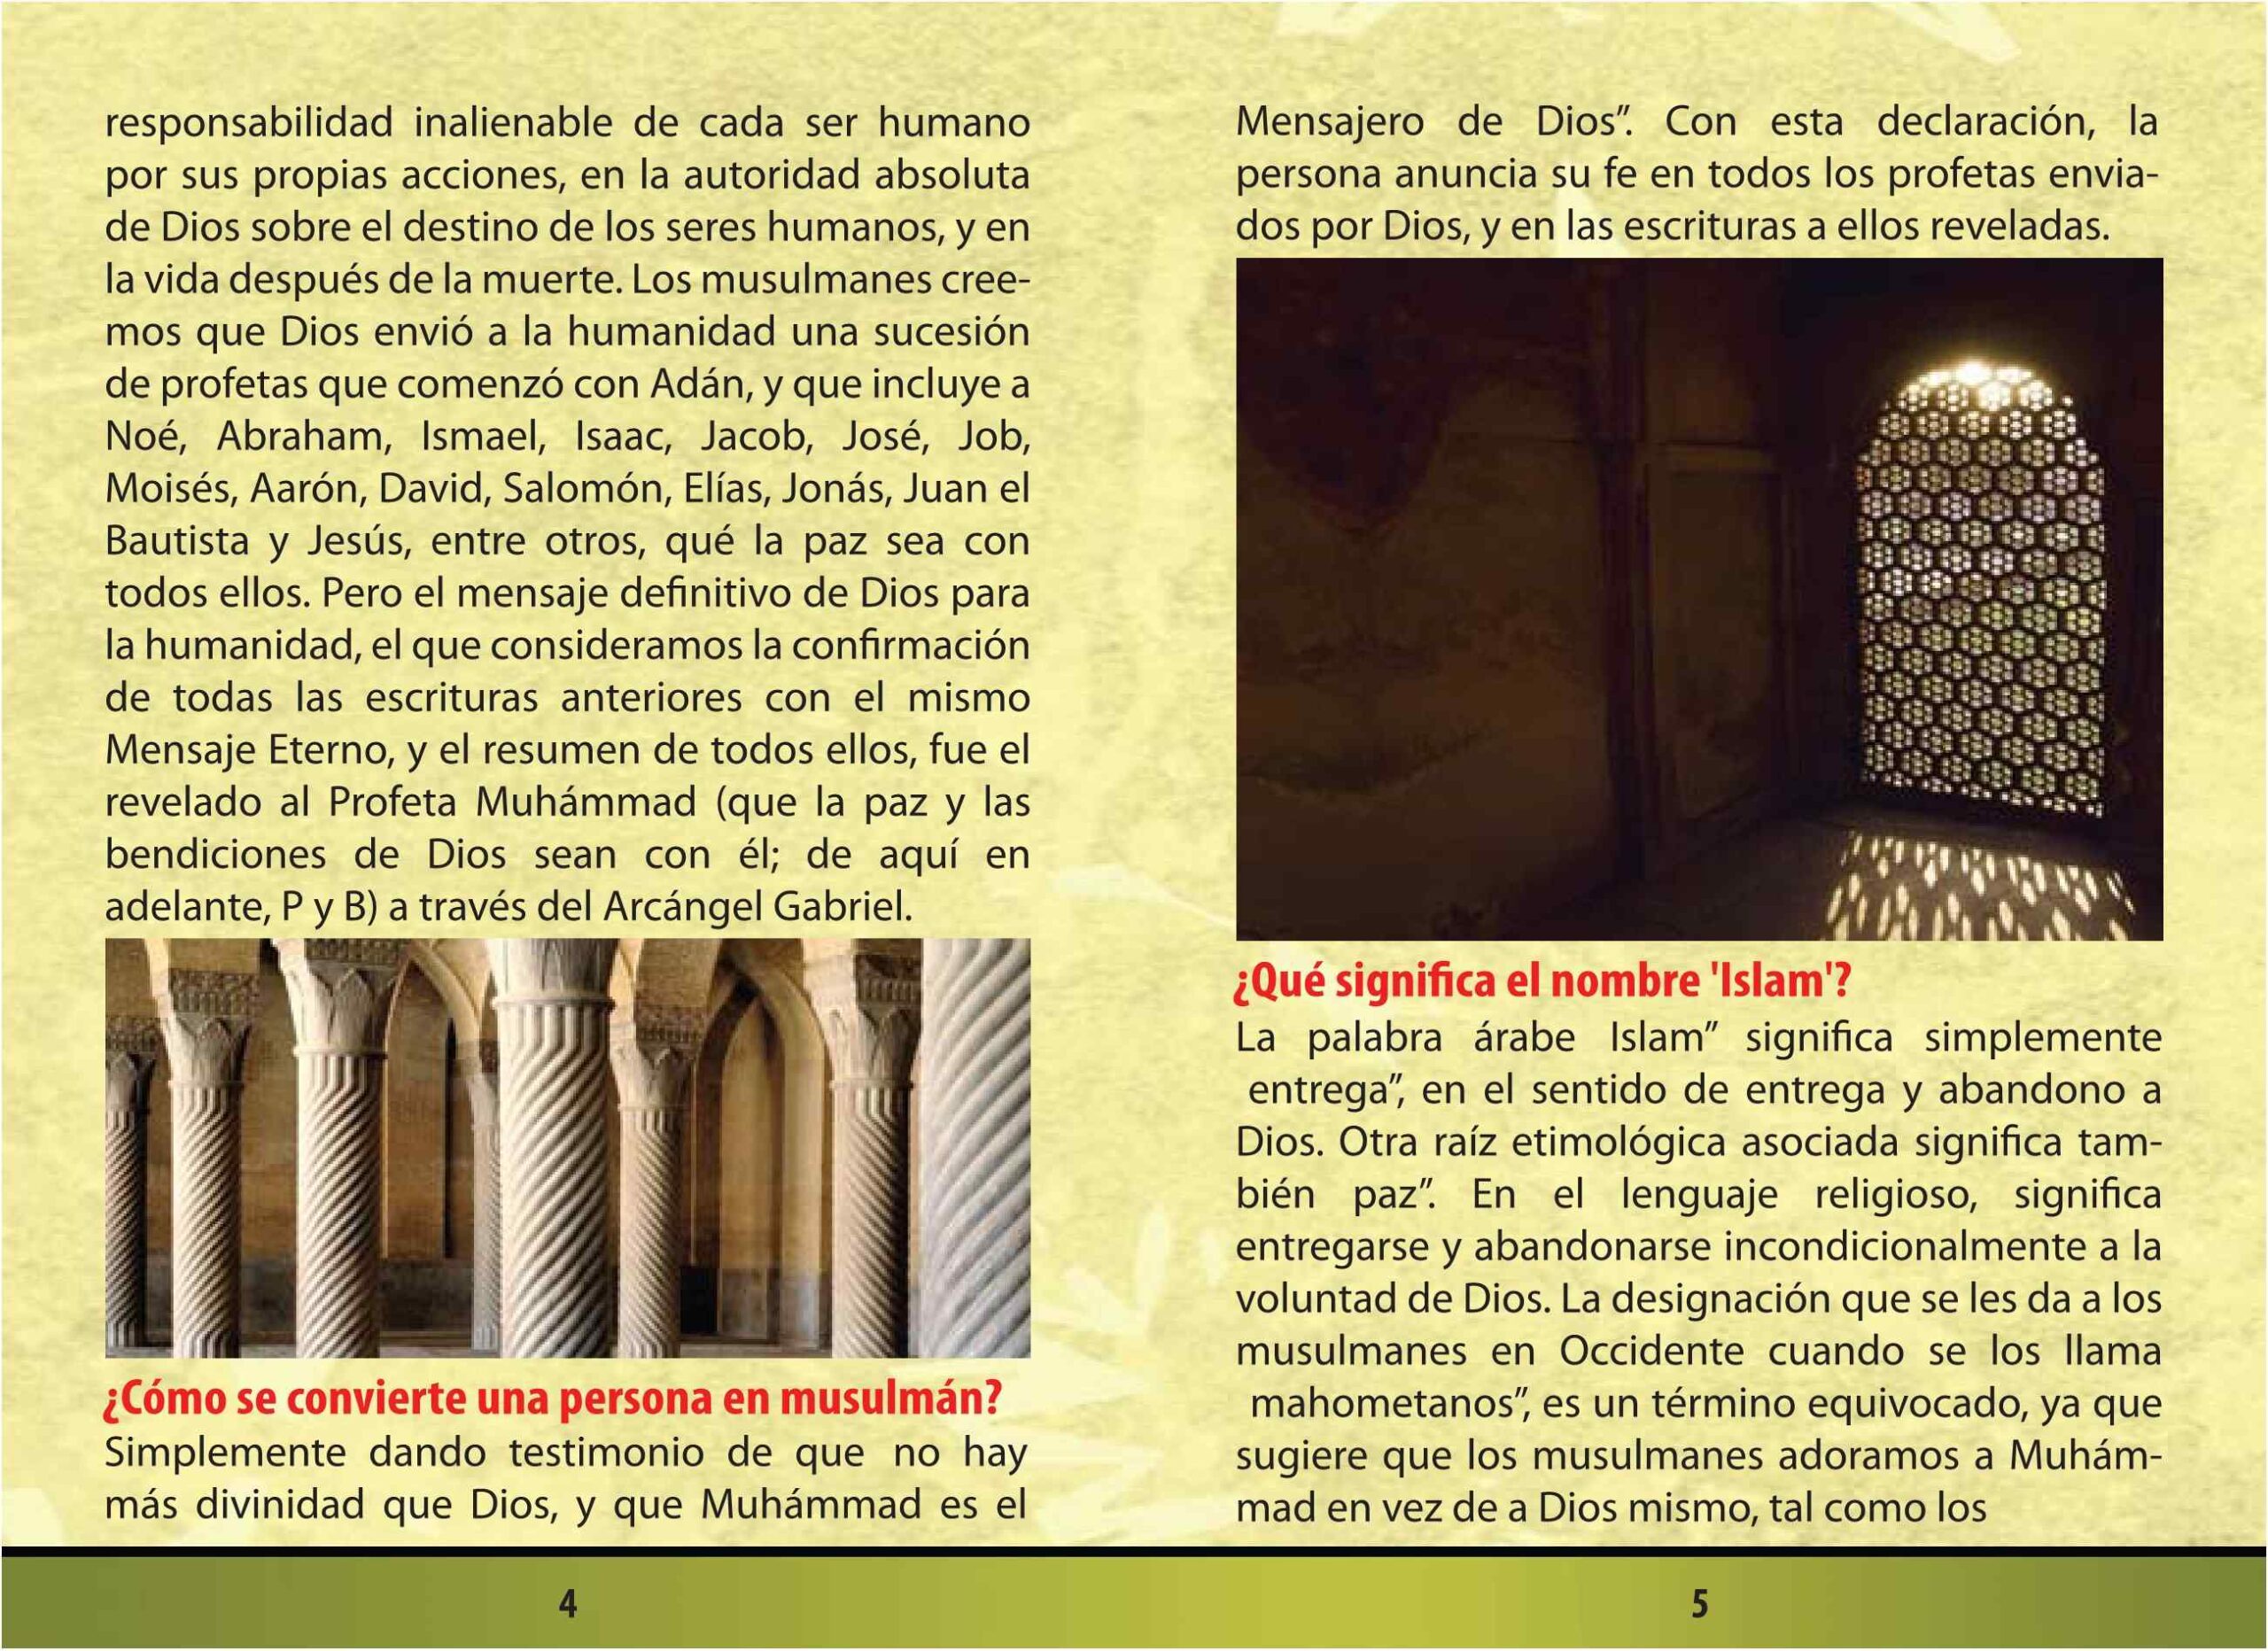 إسباني - التعريف بالإسلام والمسلمين - Entendiendo al Islam y a los Musulmanes.pdf, 34-Sayfa 